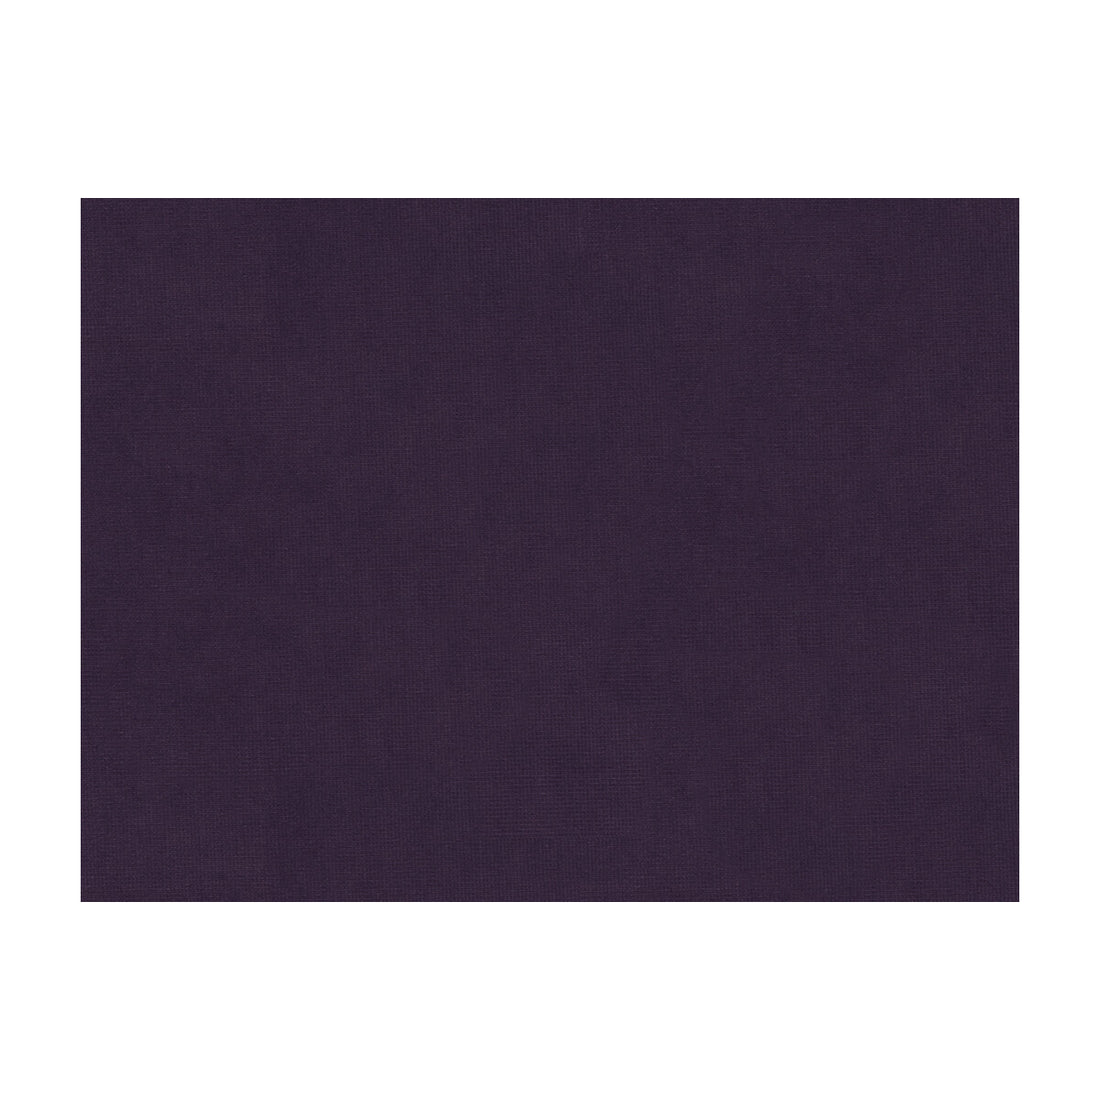 Charmant Velvet fabric in violet color - pattern 8013150.1010.0 - by Brunschwig &amp; Fils